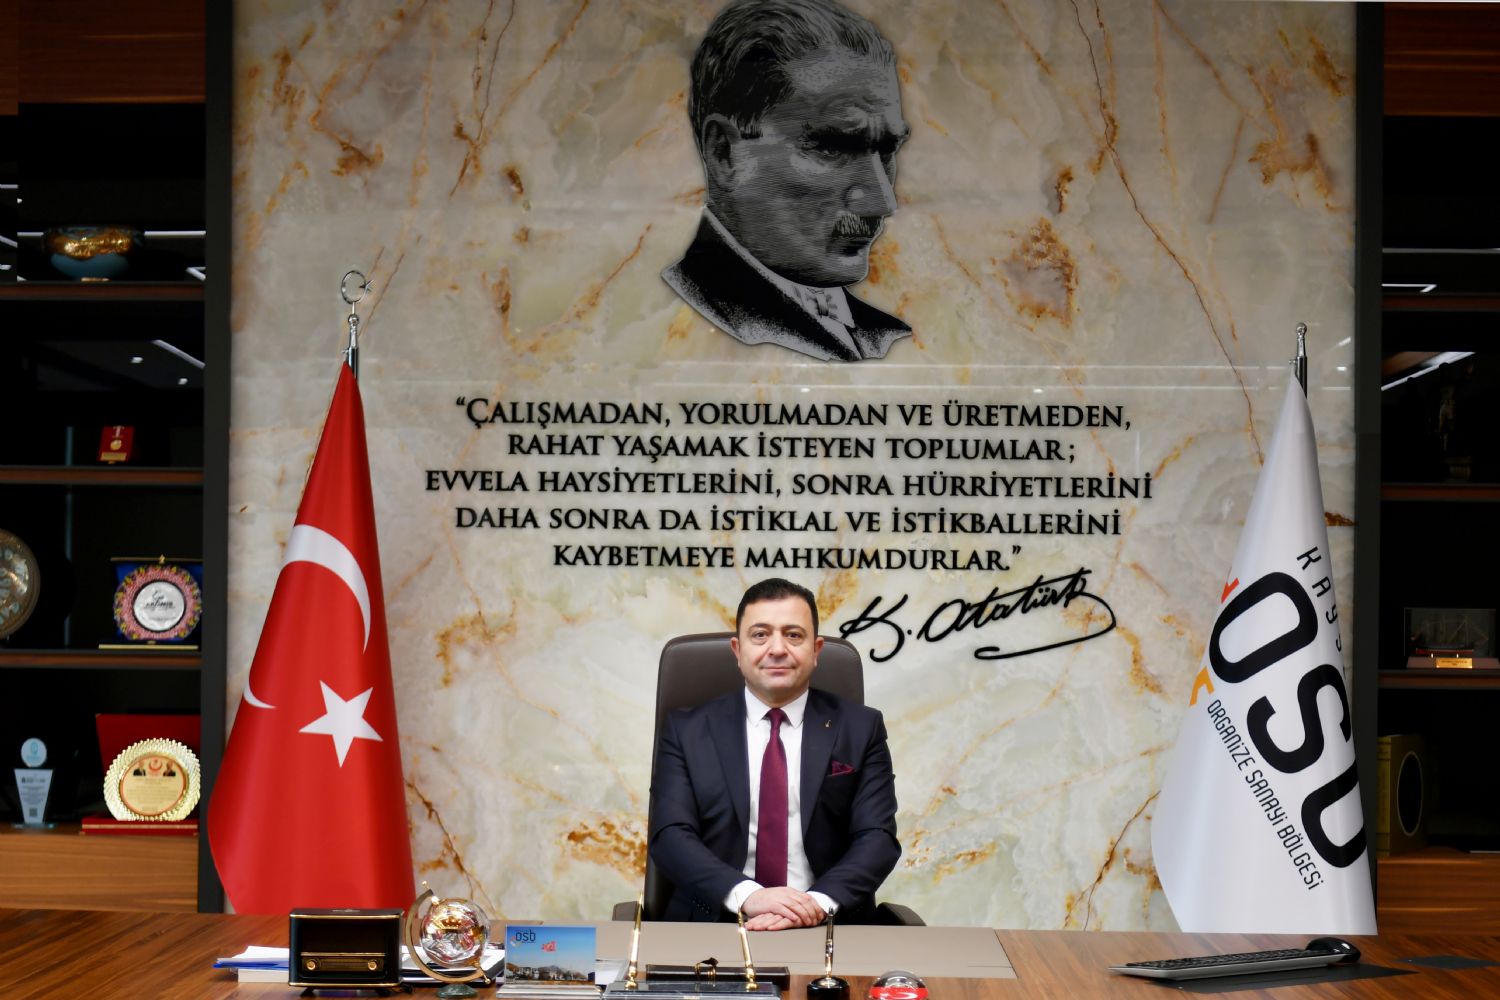  Başkan Yalçın’dan 19 Mayıs Atatürk’ü Anma Gençlik ve Spor Bayramı Mesajı.